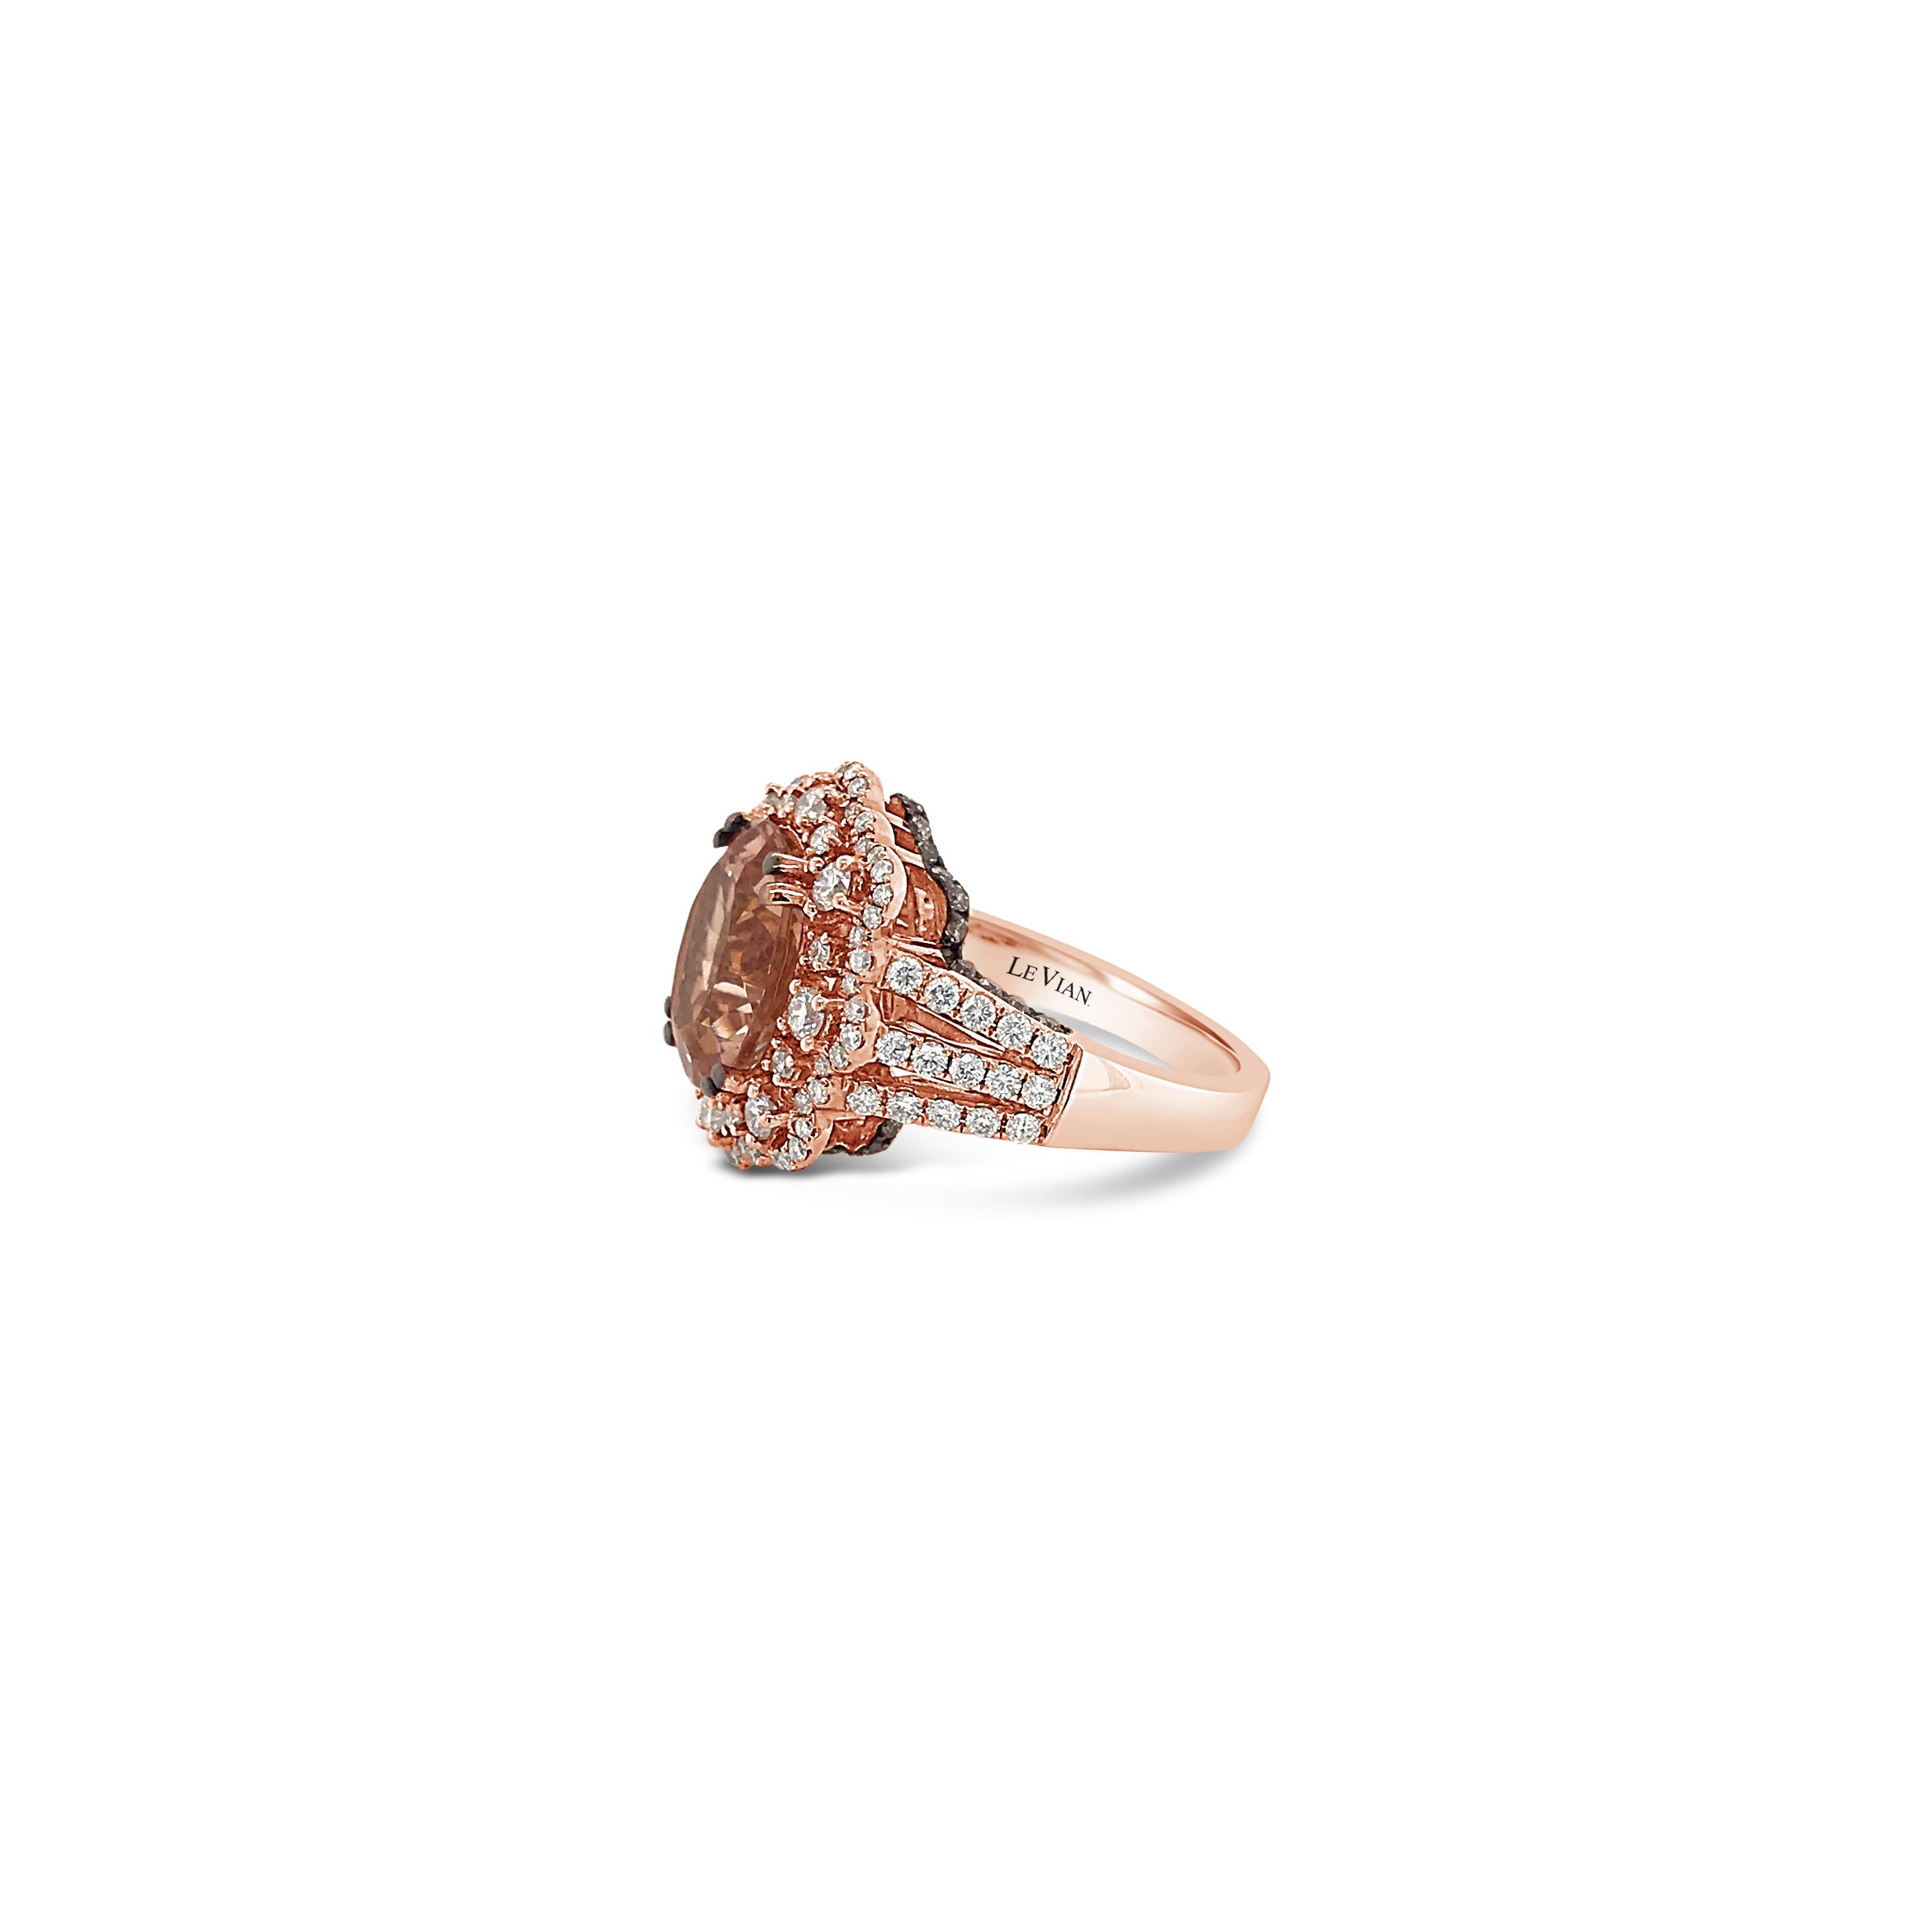 LeVian 18K Rose Gold Rosa Morganit Schokolade Braun Runde Diamanten Halo Ring
